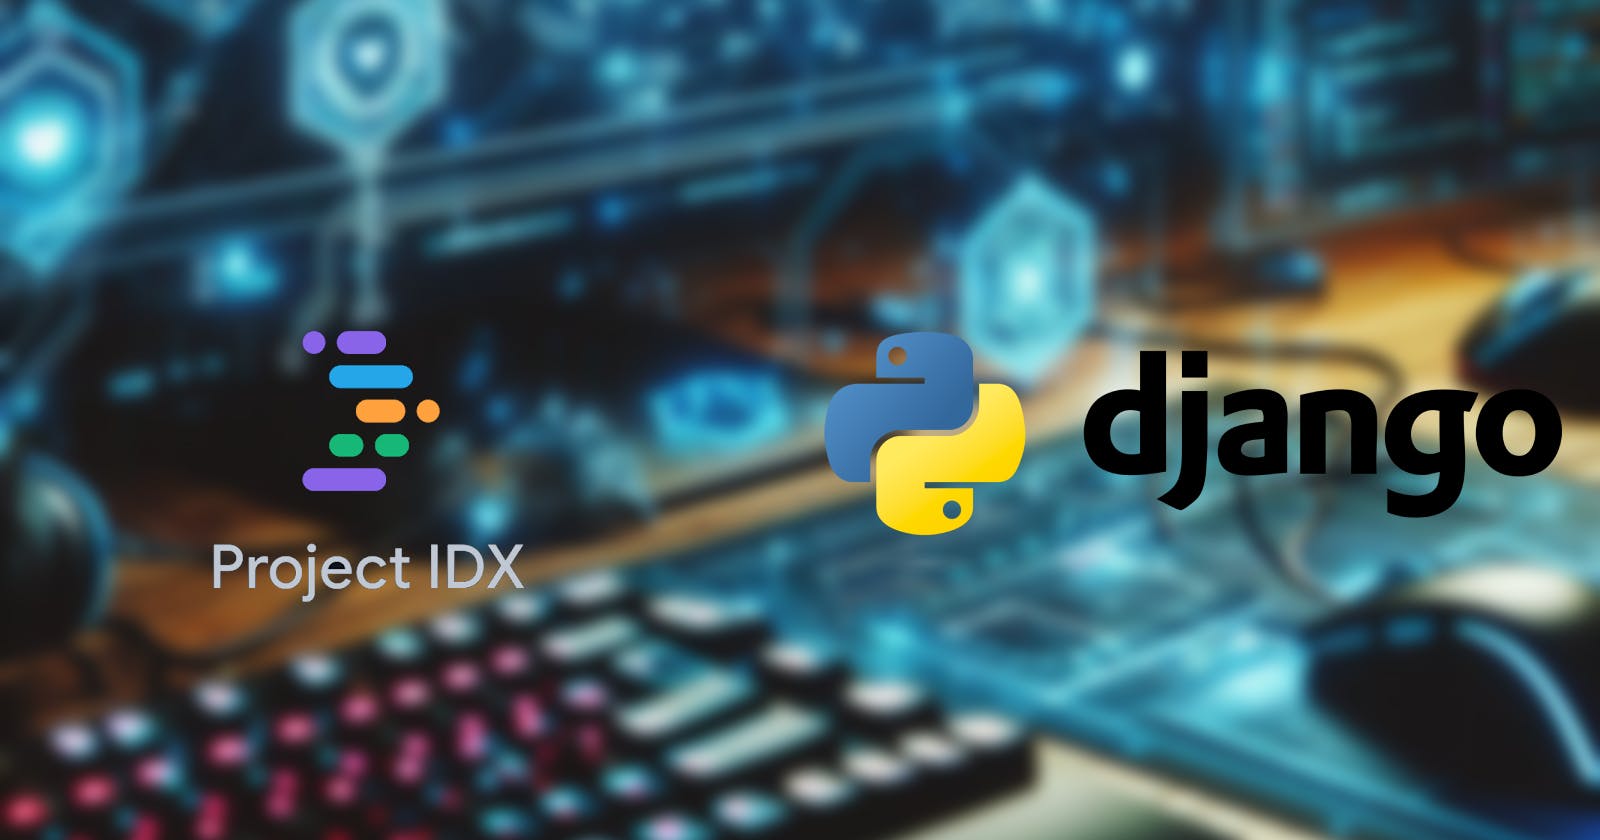 Django in Google's Project IDX